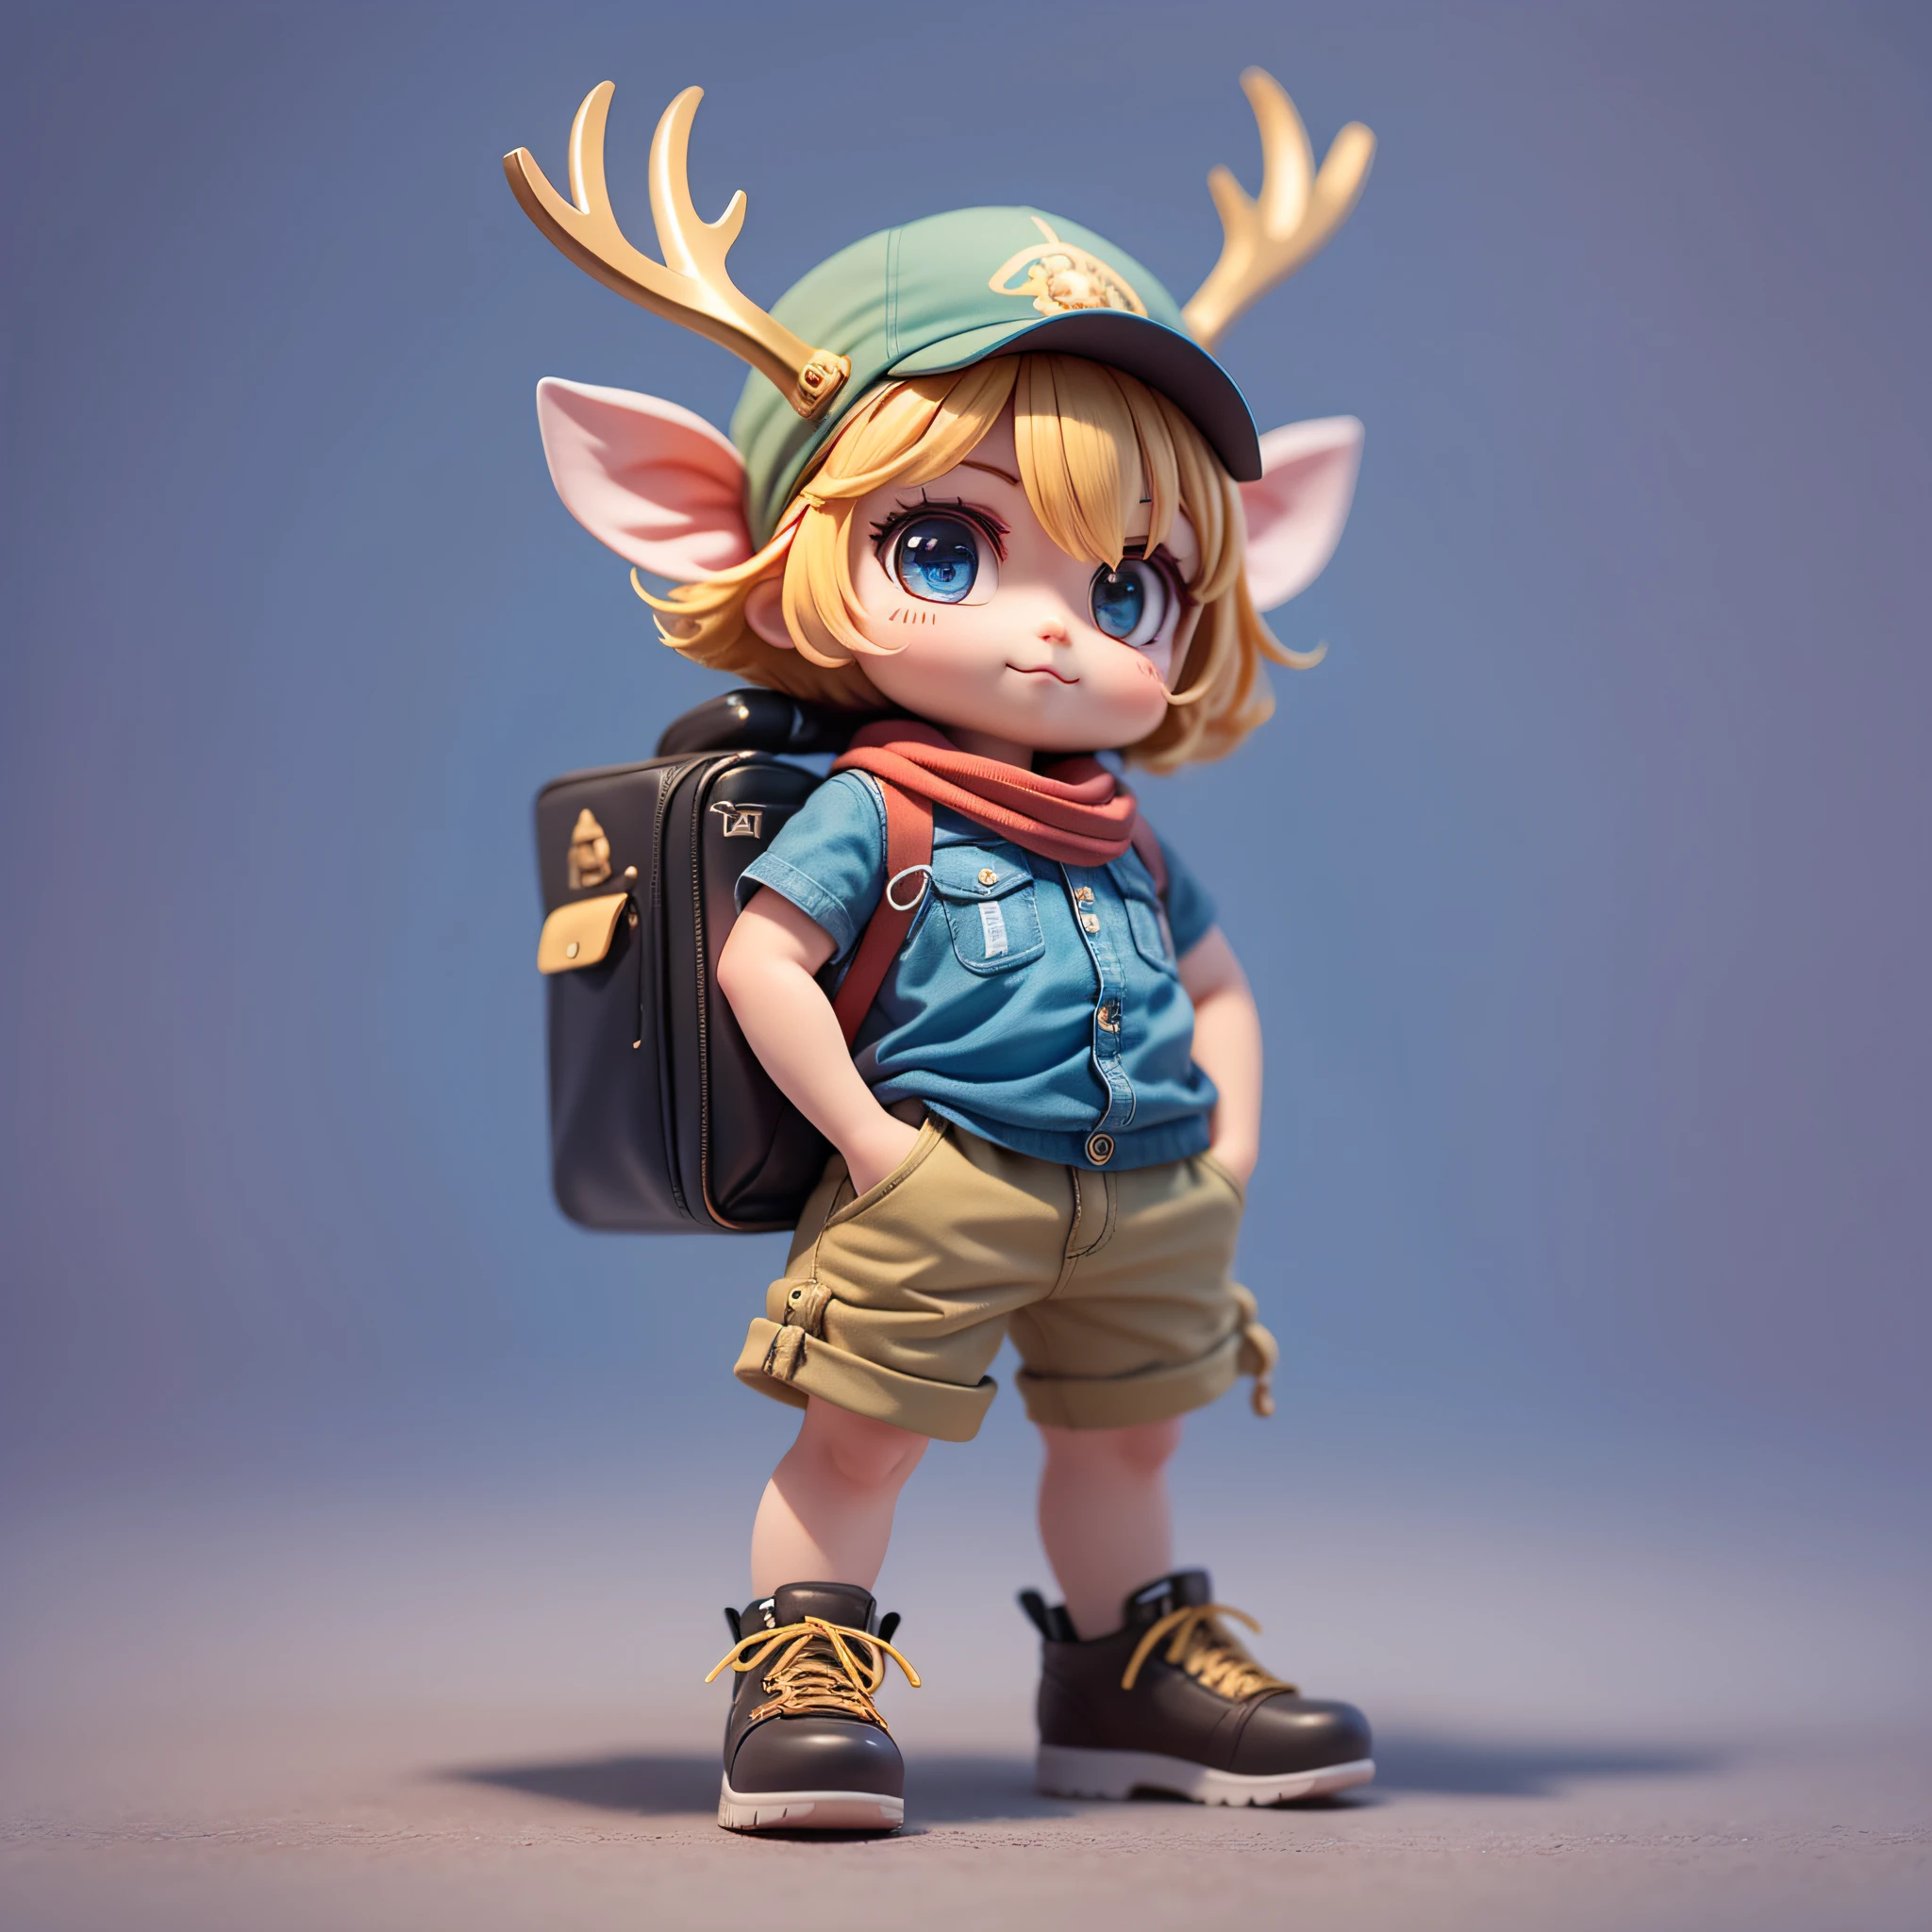 杰作，最好的品质，很多细节，(全身:1.2)，戴着麋鹿形帽子的超级可爱男孩，头顶有一对鹿角，可爱的鹿角，穿蓝色衬衫、红色头巾和卡其色短裤，科技元素，时尚的衣服，大眼睛，微笑，3D渲染，Q 版画风格，简化 3D/C4D制作：8K 高清画质/照亮/超精细镜头描绘1.5，完美无瑕，赤壁背景/电影感